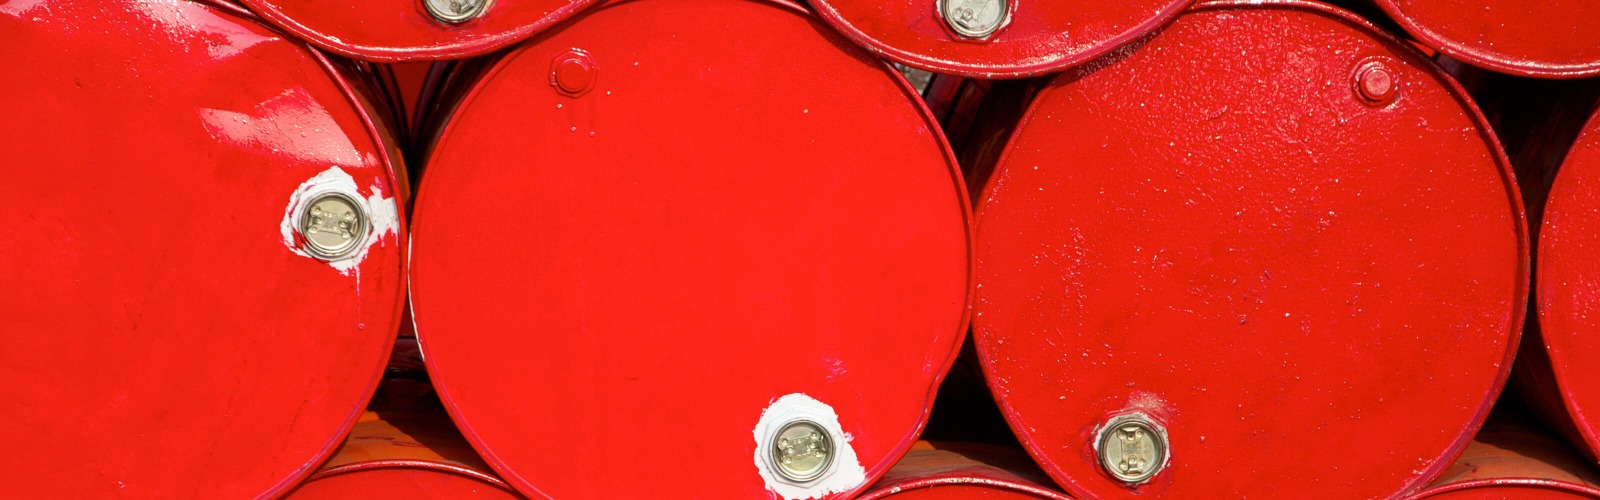 Red oil barrels 